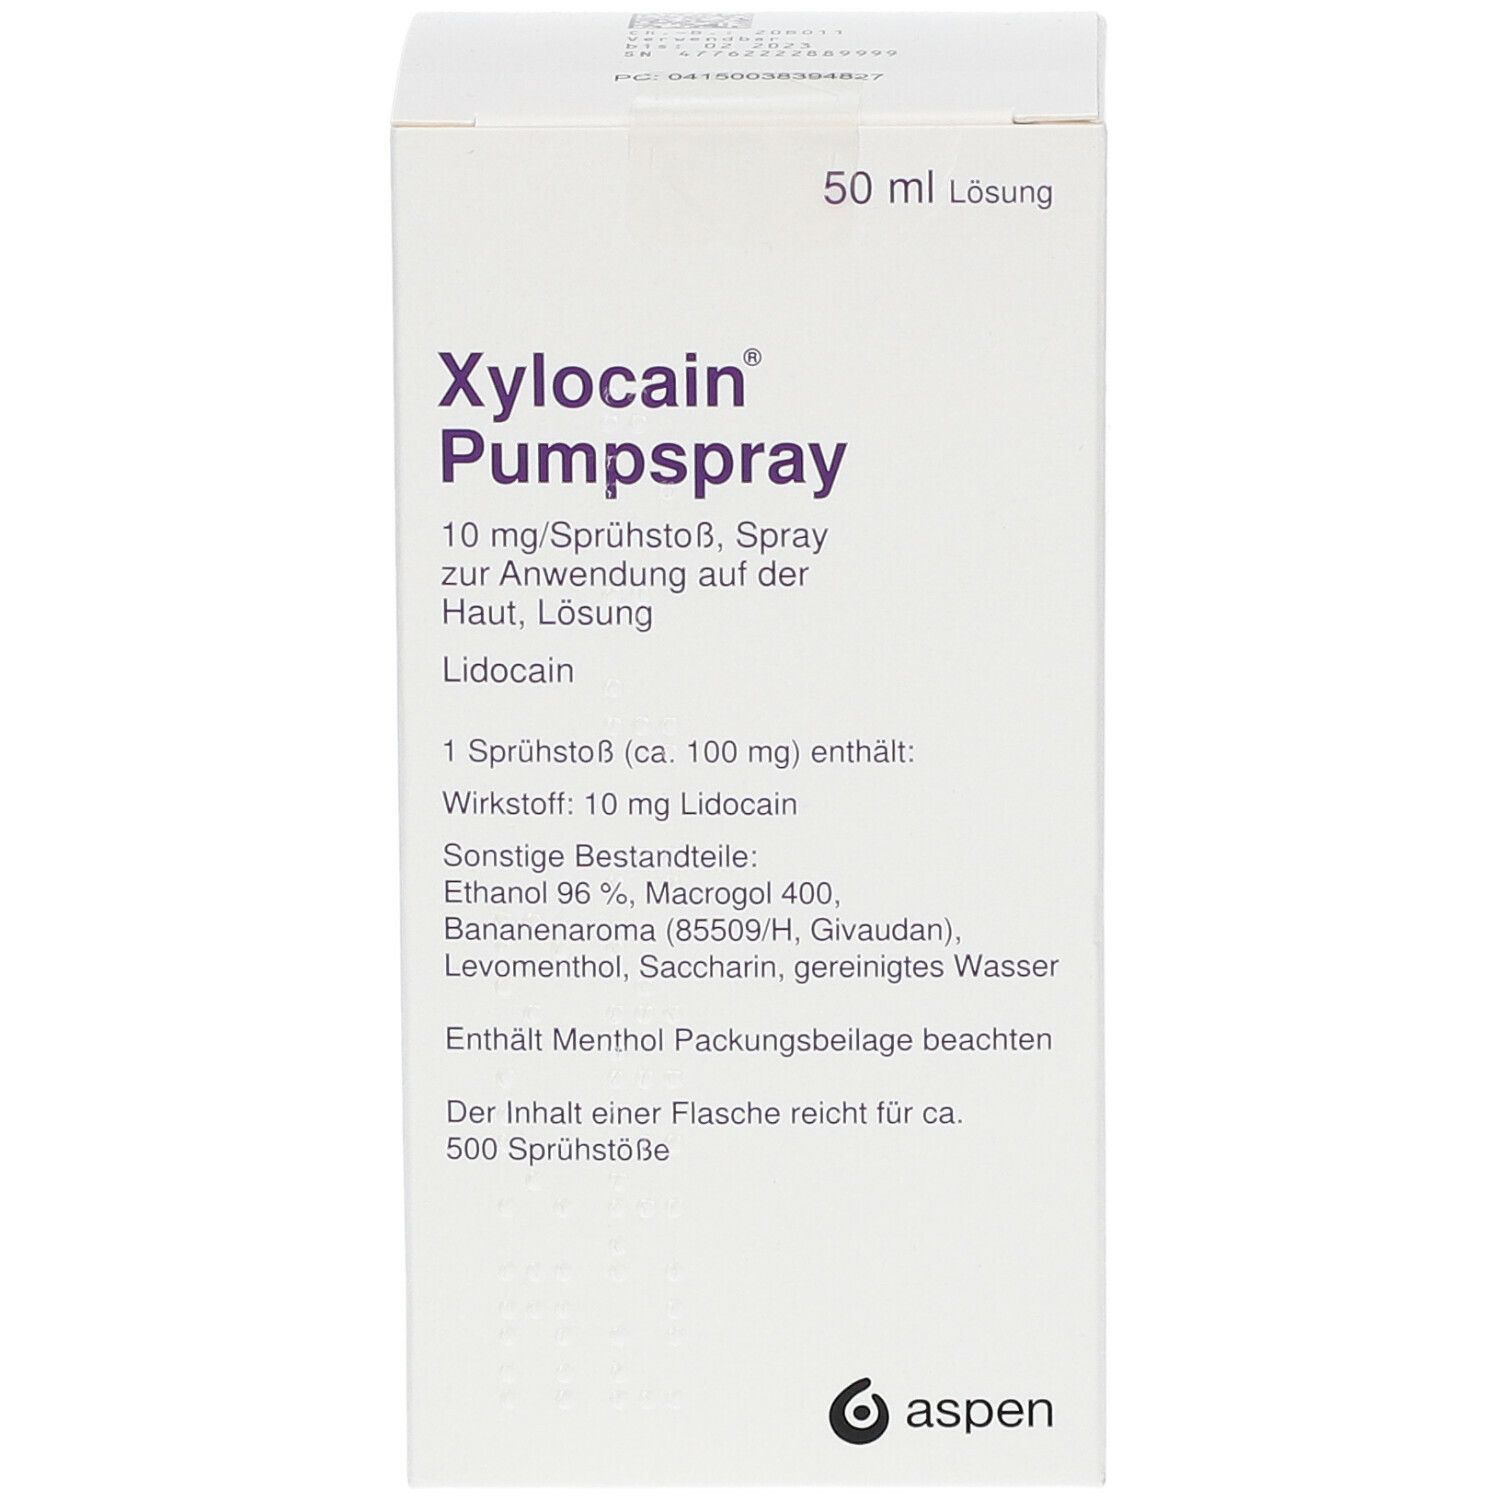 Xylocain® Pumpspray